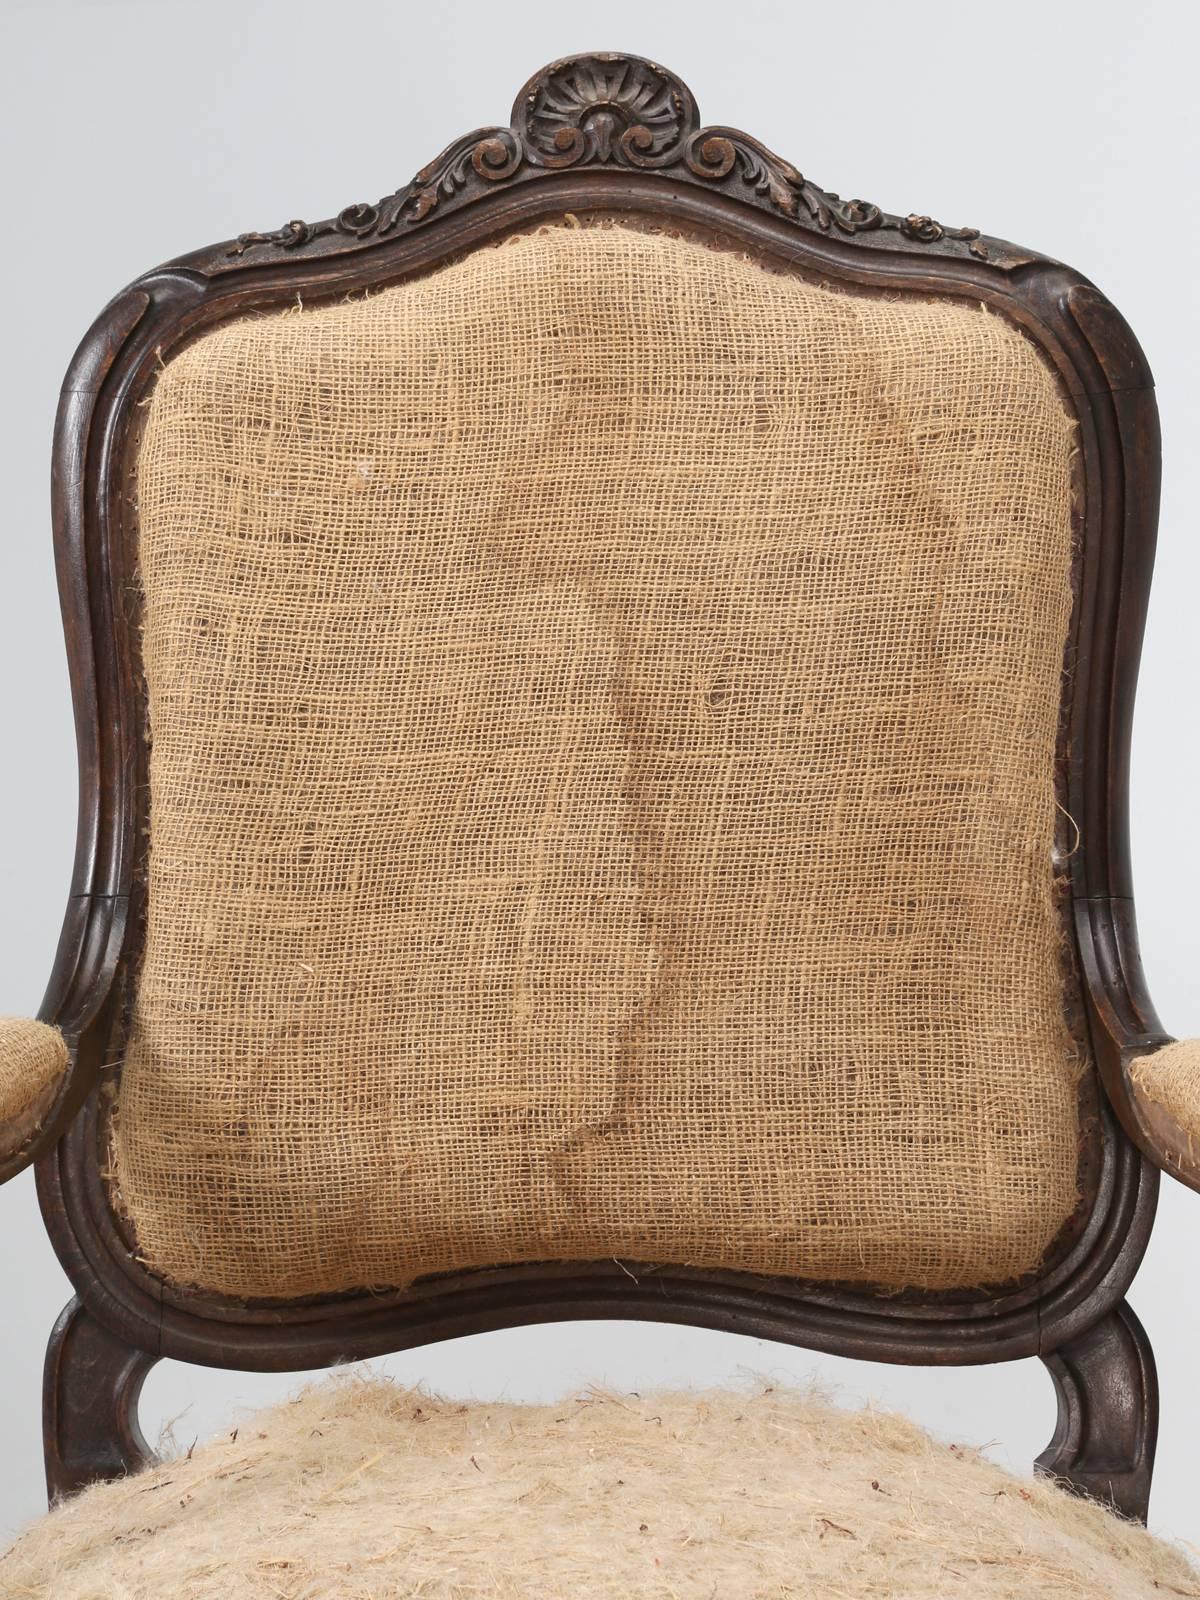 Antike französische Sessel, aufwändig handgeschnitzt in den späten 1800er Jahren, in vorgefundenem Zustand. Die beiden antiken französischen Sessel haben noch ihre ursprüngliche Polsterung aus Rosshaar und geschreddertem Kokos und sind mit einer